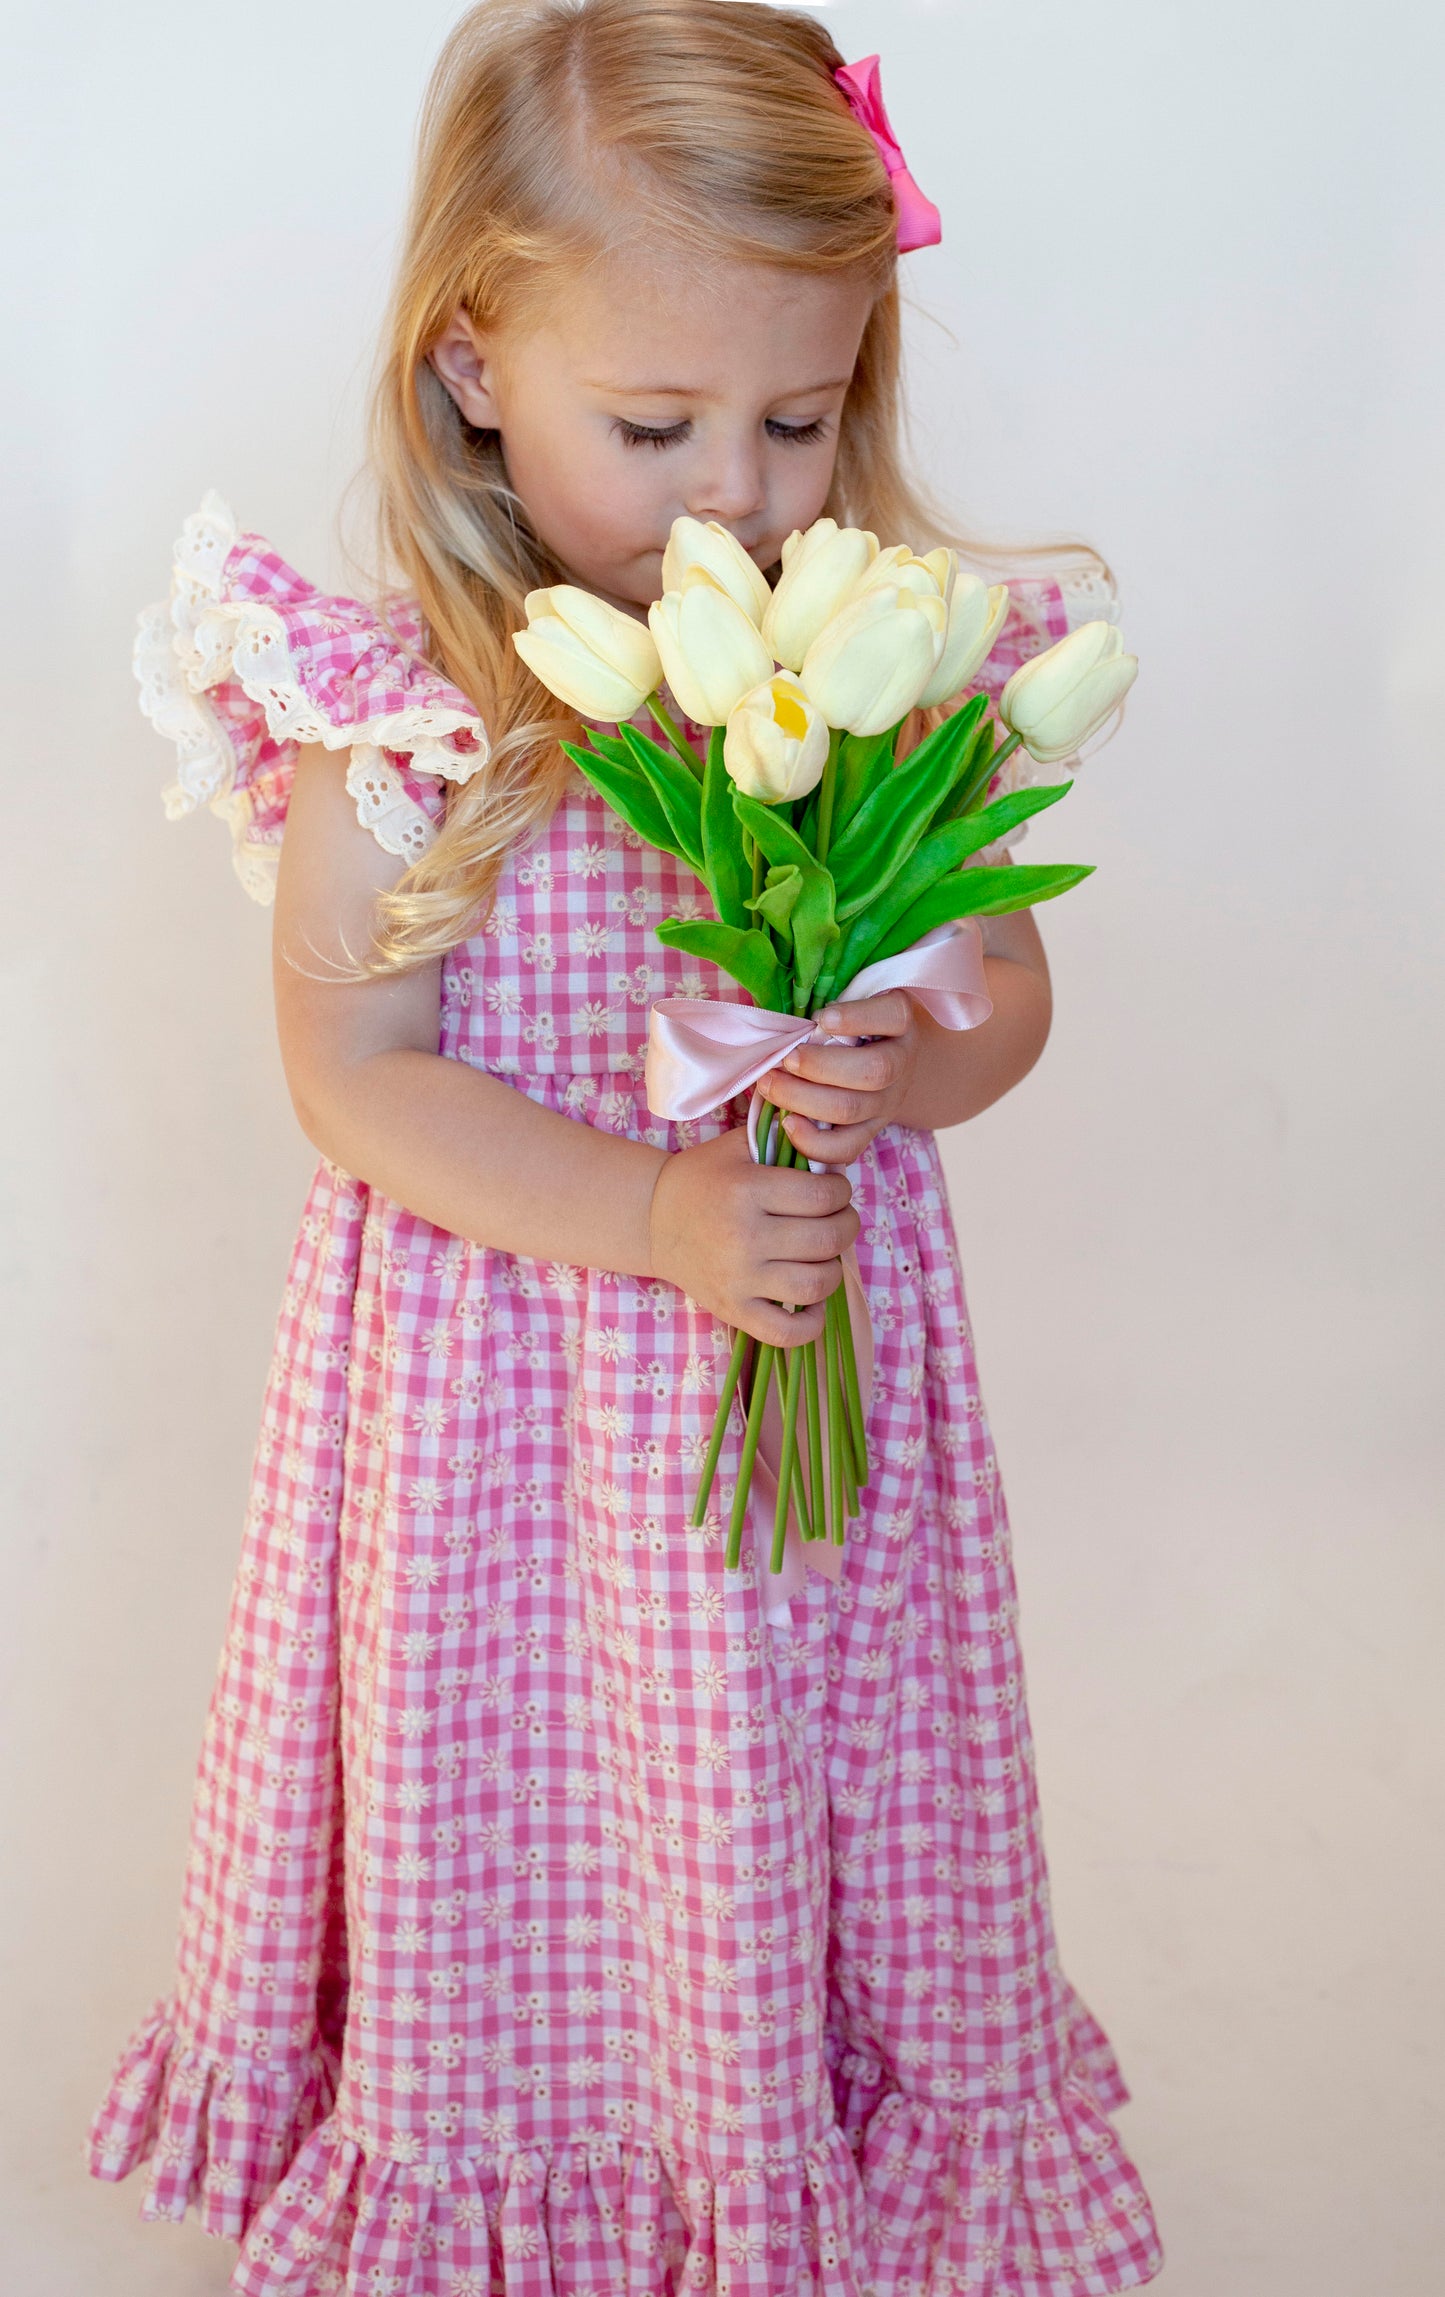 The Daisy Eyelet Easter Gingham Dress